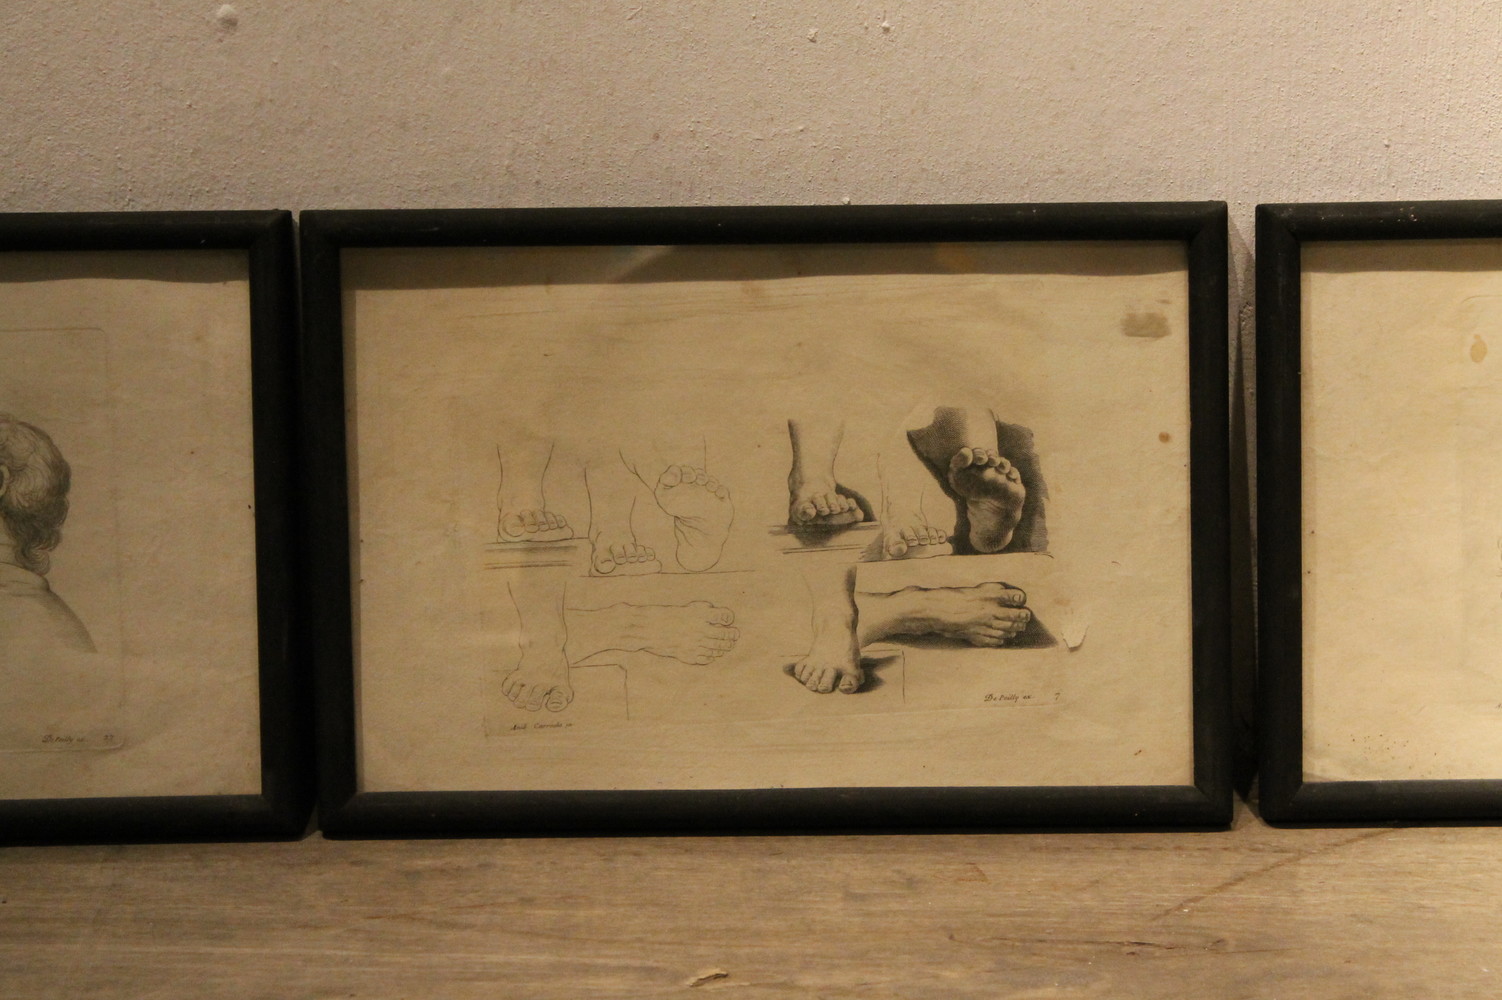  set of (6) engravings - framed